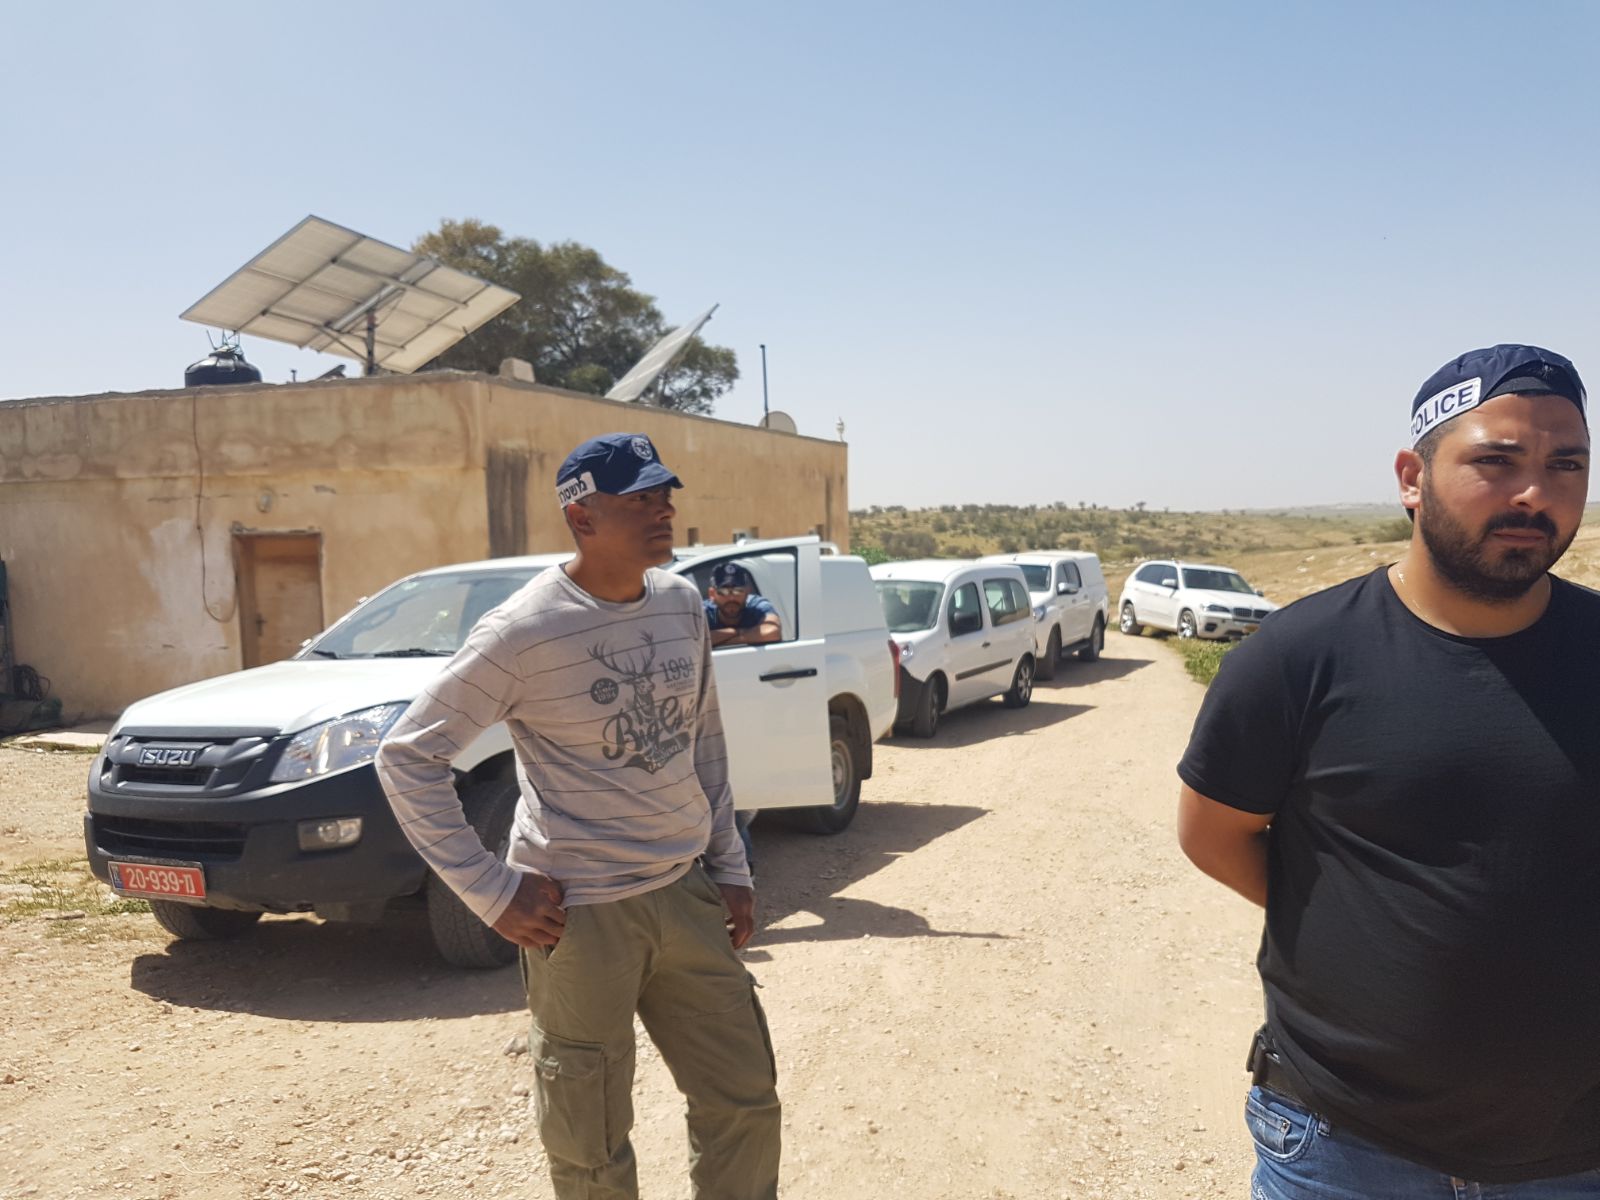 שוטרים מלווים את אנשי רשות מקרקעי ישראל לחלוקת צווי פינוי והריסה לכל מבני ותושבי הכפר. 21 במרץ 2018 (רא'אד אבו אלקיעאן)